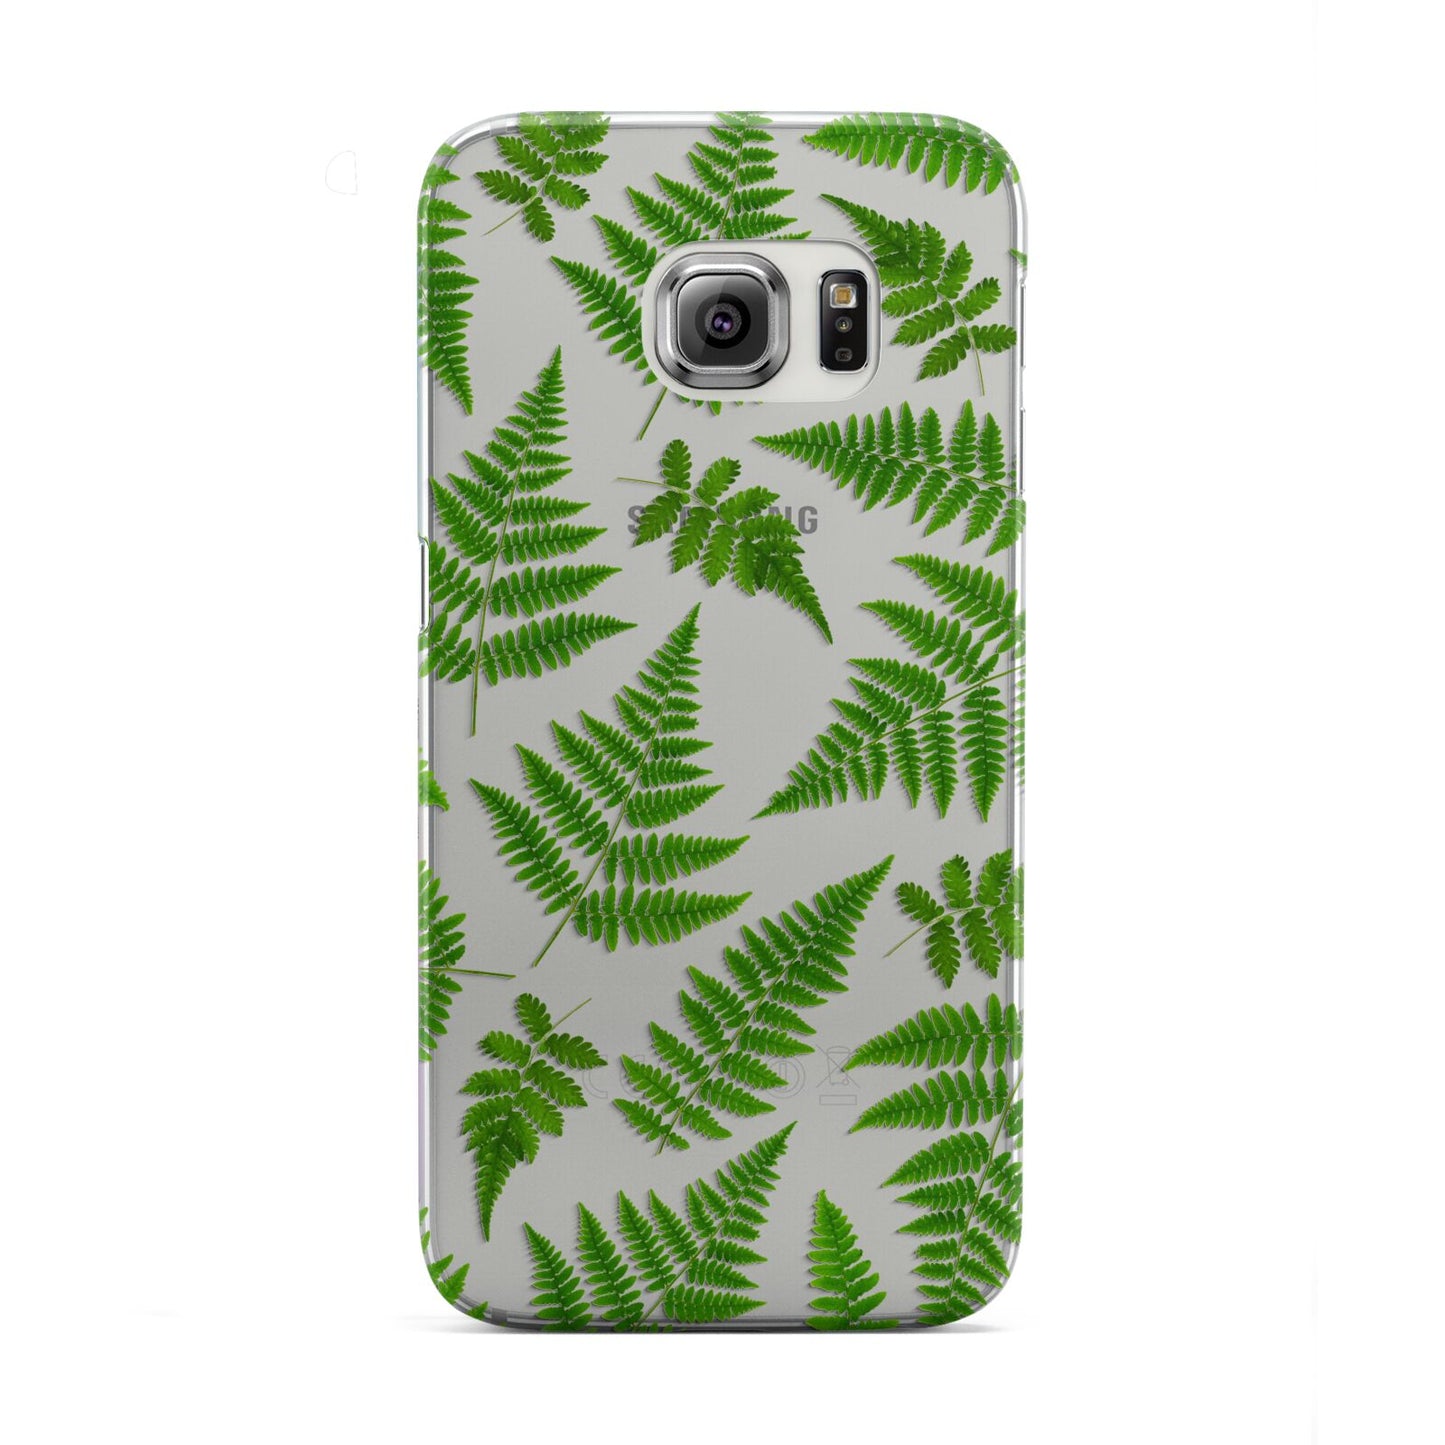 Fern Leaf Samsung Galaxy S6 Edge Case